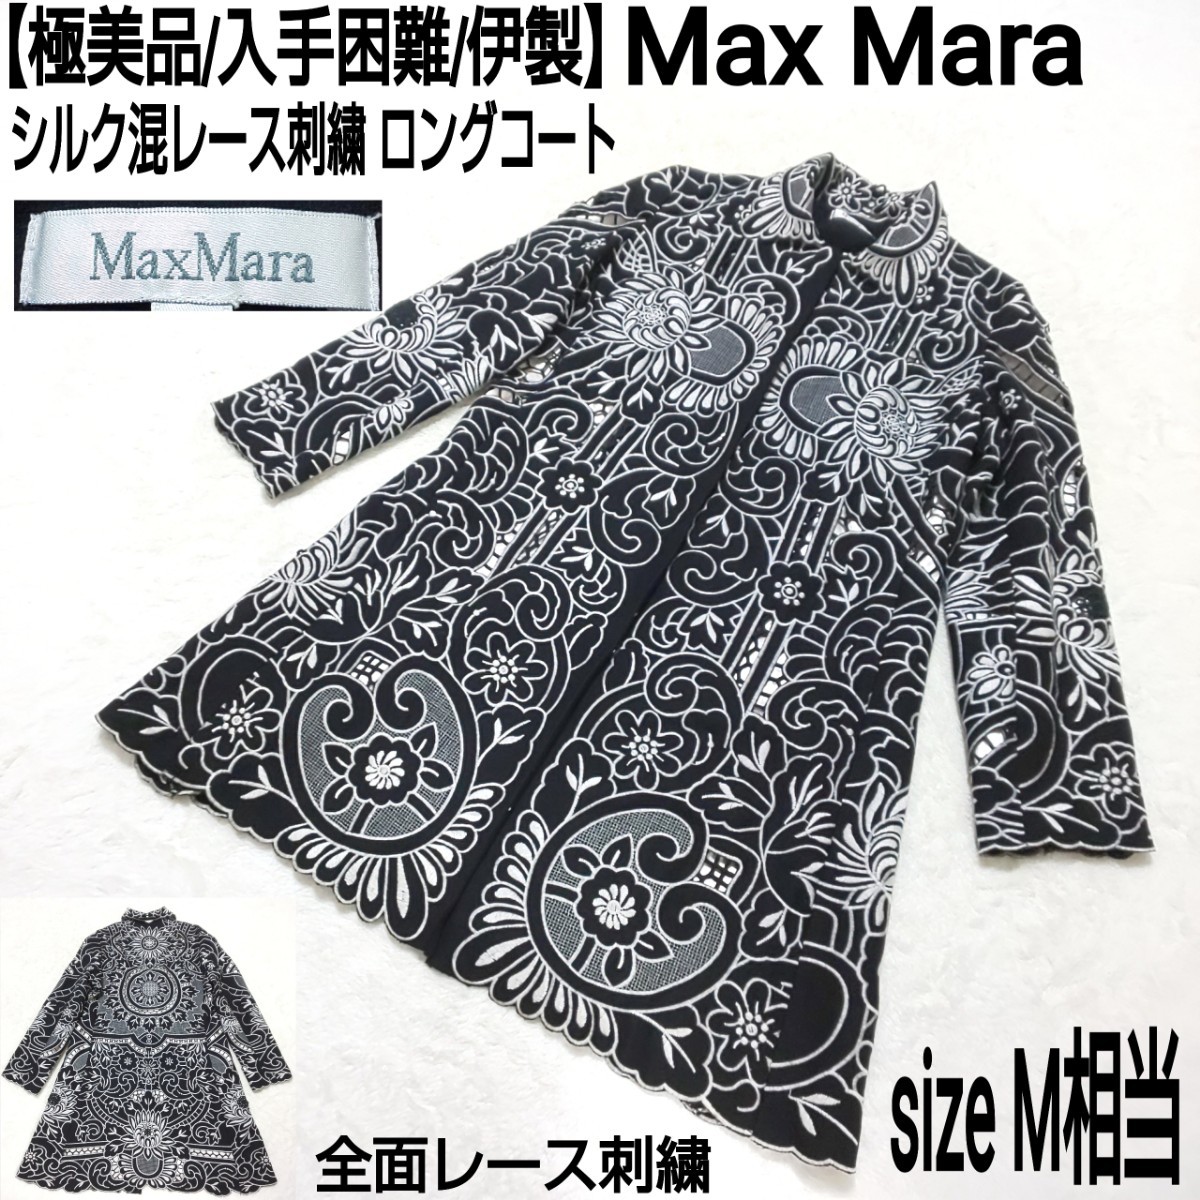 【極美品/入手困難】Max Mara マックスマーラ シルク混レース刺繍 ロングコート ステンカラーコート 総柄 伊製 ブラック×シルバー M相当